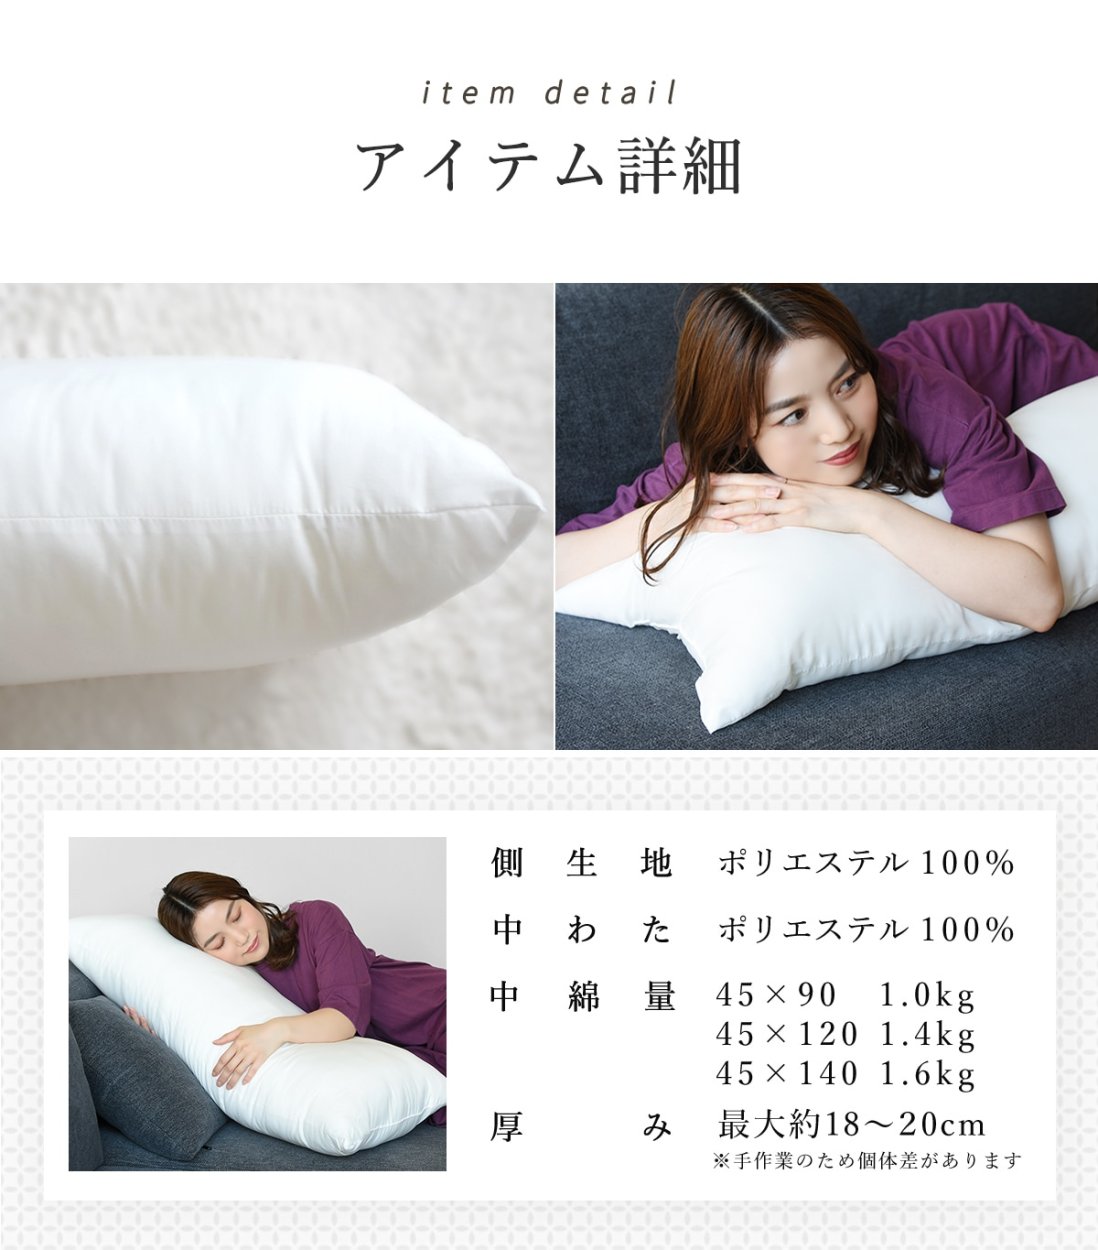 日本製 抱き枕 中身 45×90 45×120 45×140 ロングクッション 枕 ロング ヌードクッション【カバーなし】 43410  :43410:minet - 通販 - Yahoo!ショッピング